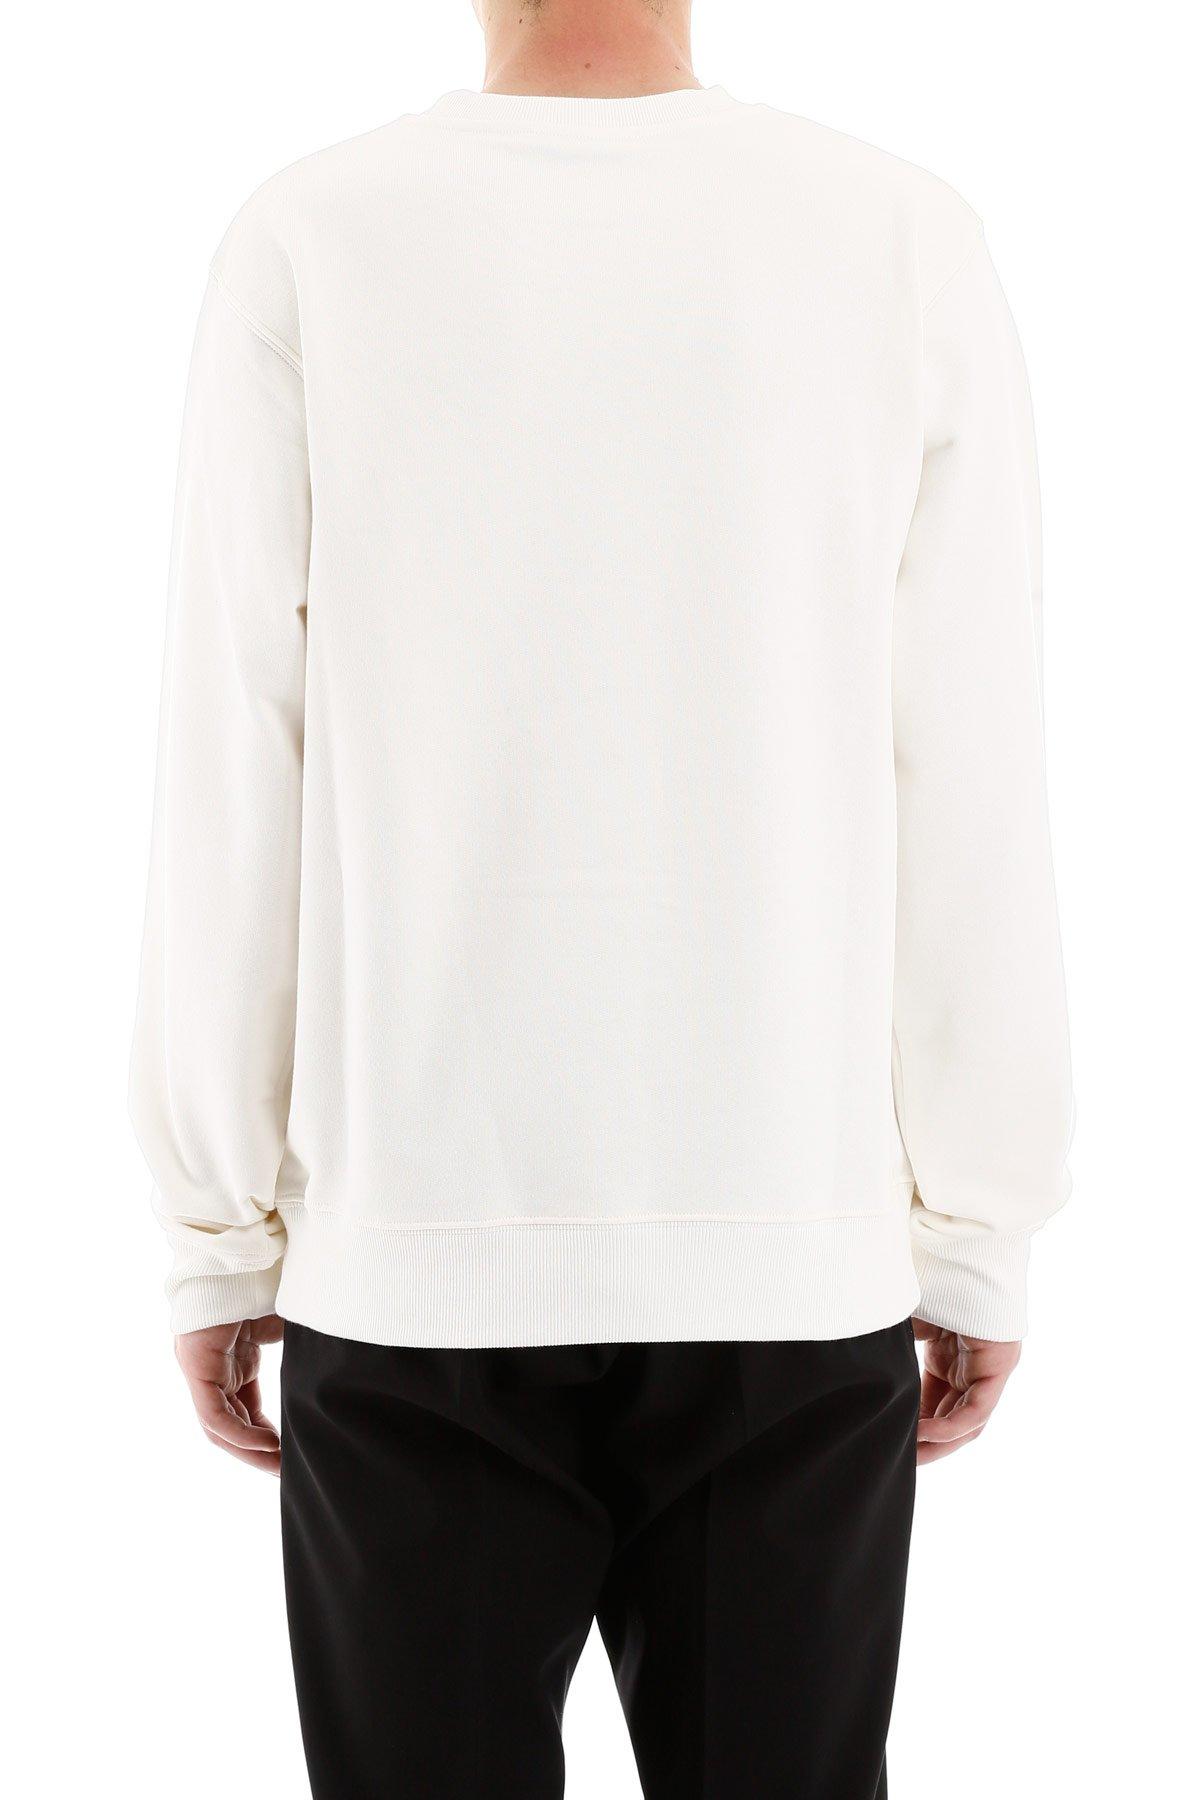 Dior Fleece And Daniel Arsham Sweatshirt in White for Men - Lyst